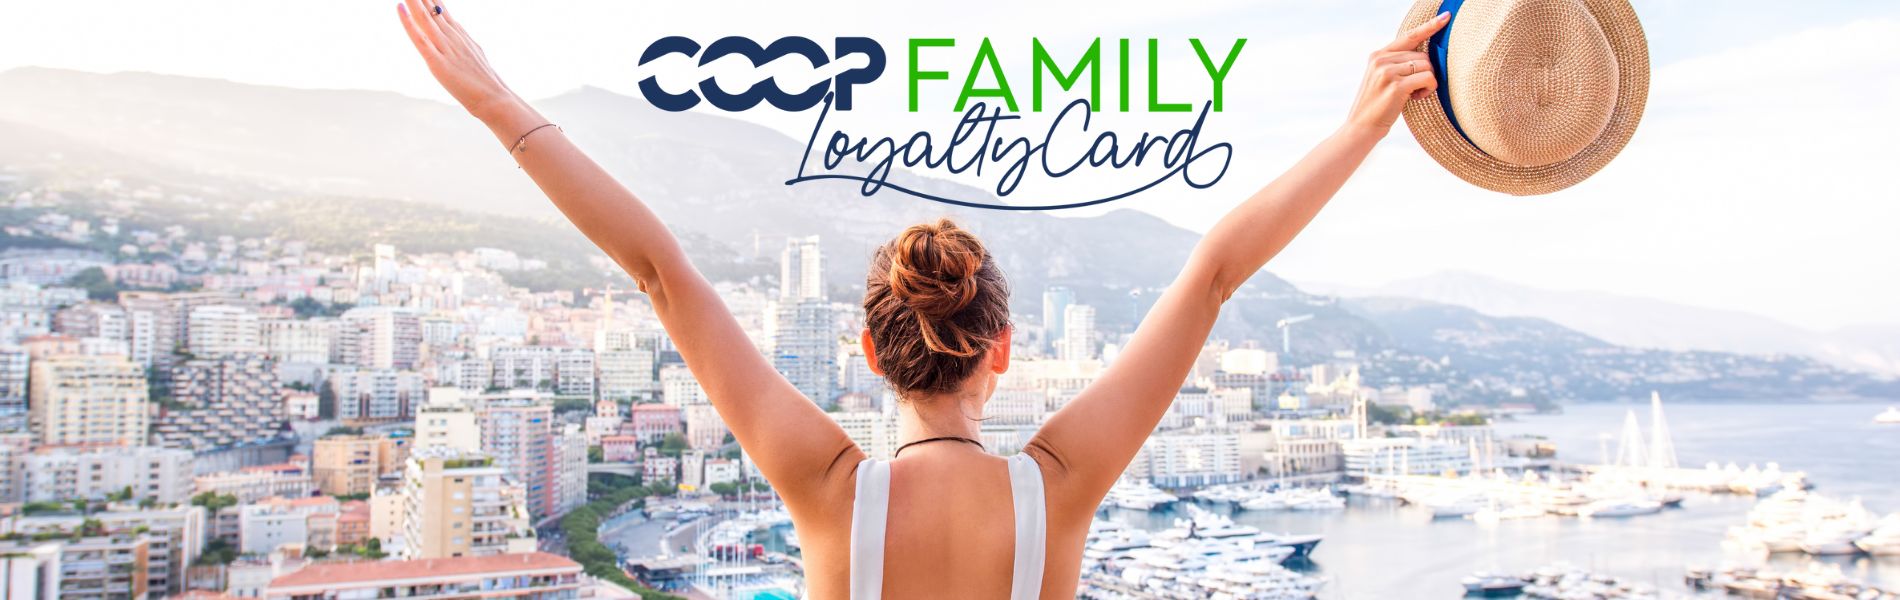 cooptravel-loyaltycard-details-img-1.jpg